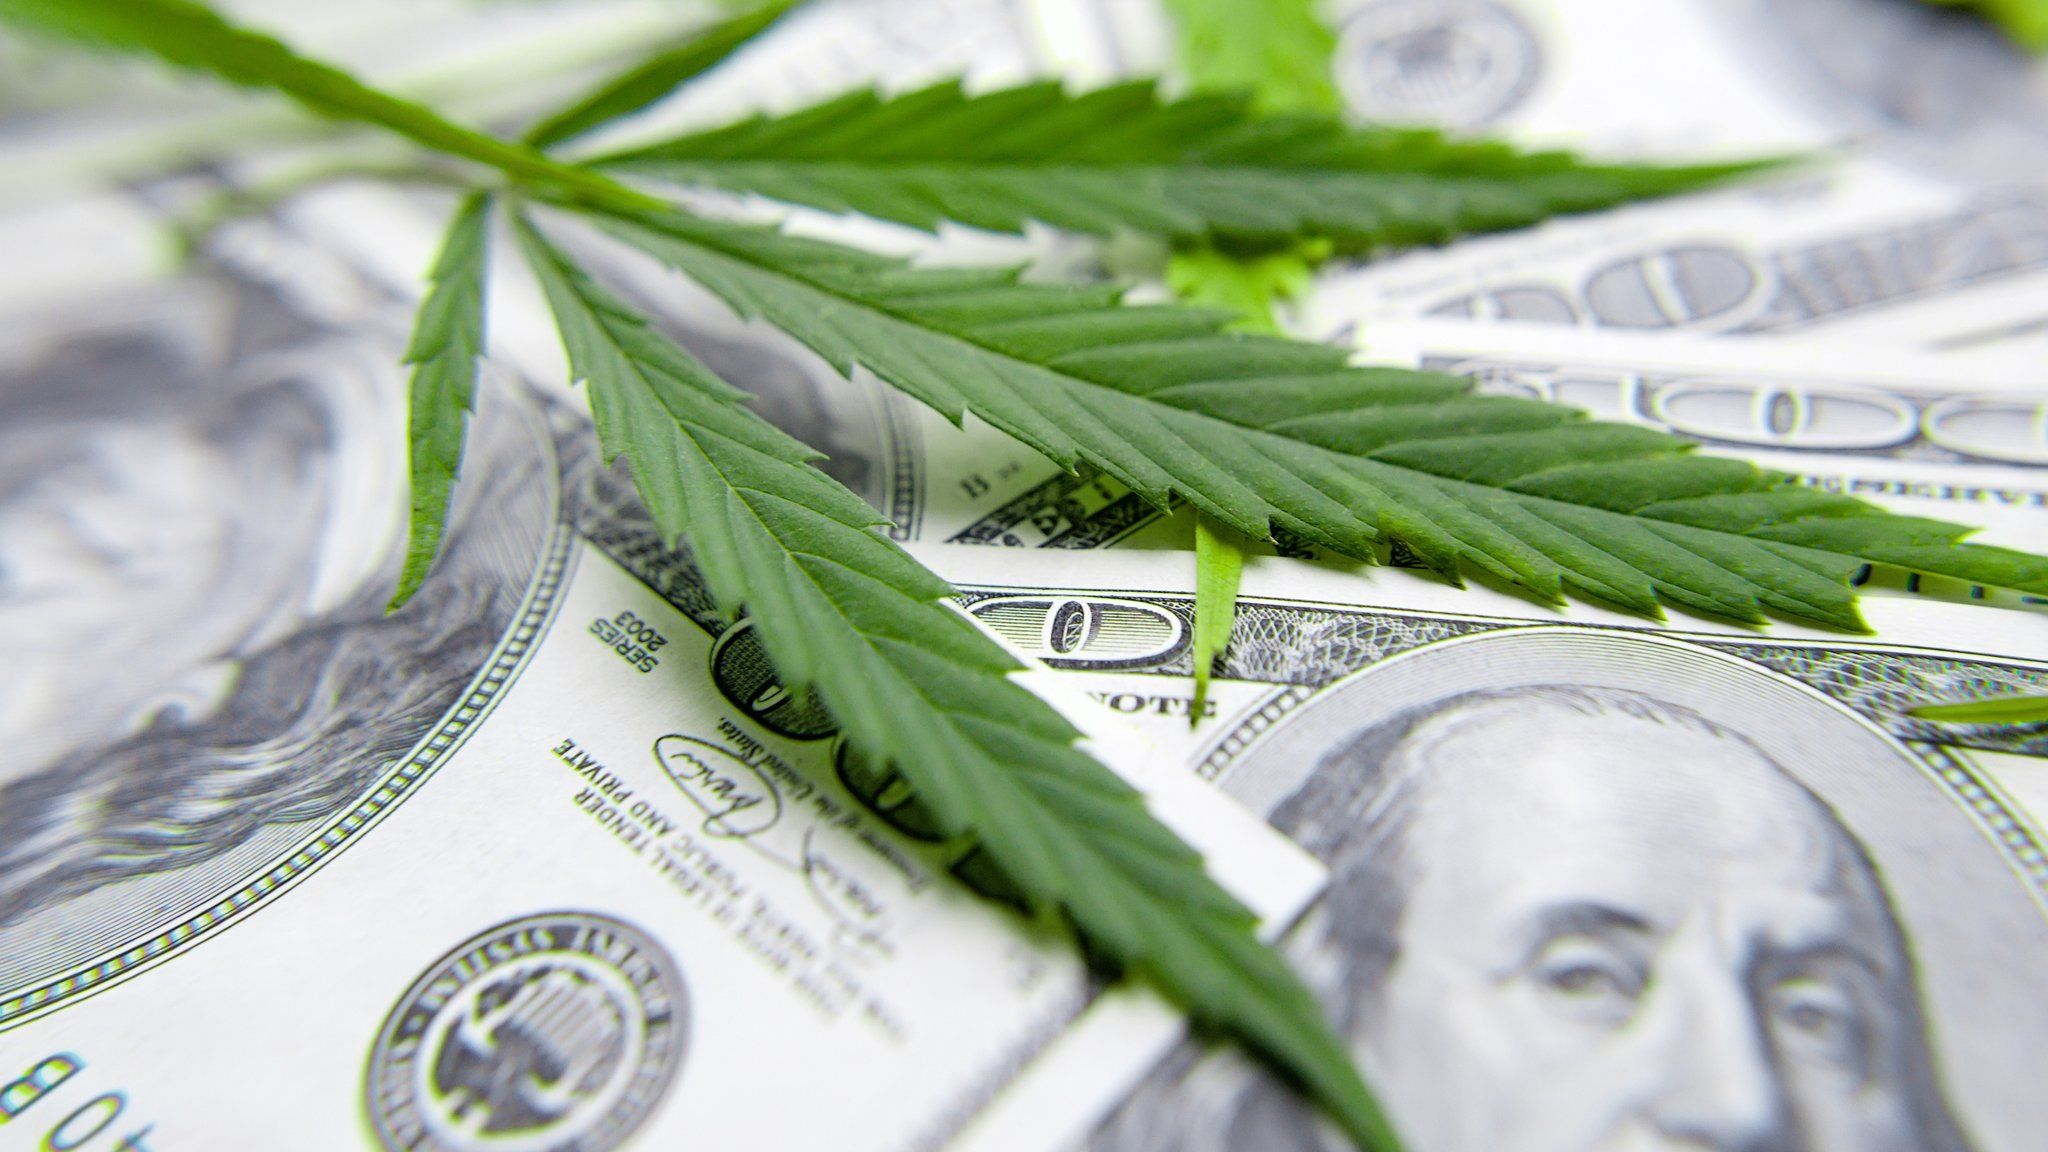 Cannabis leaf and a dollar bill